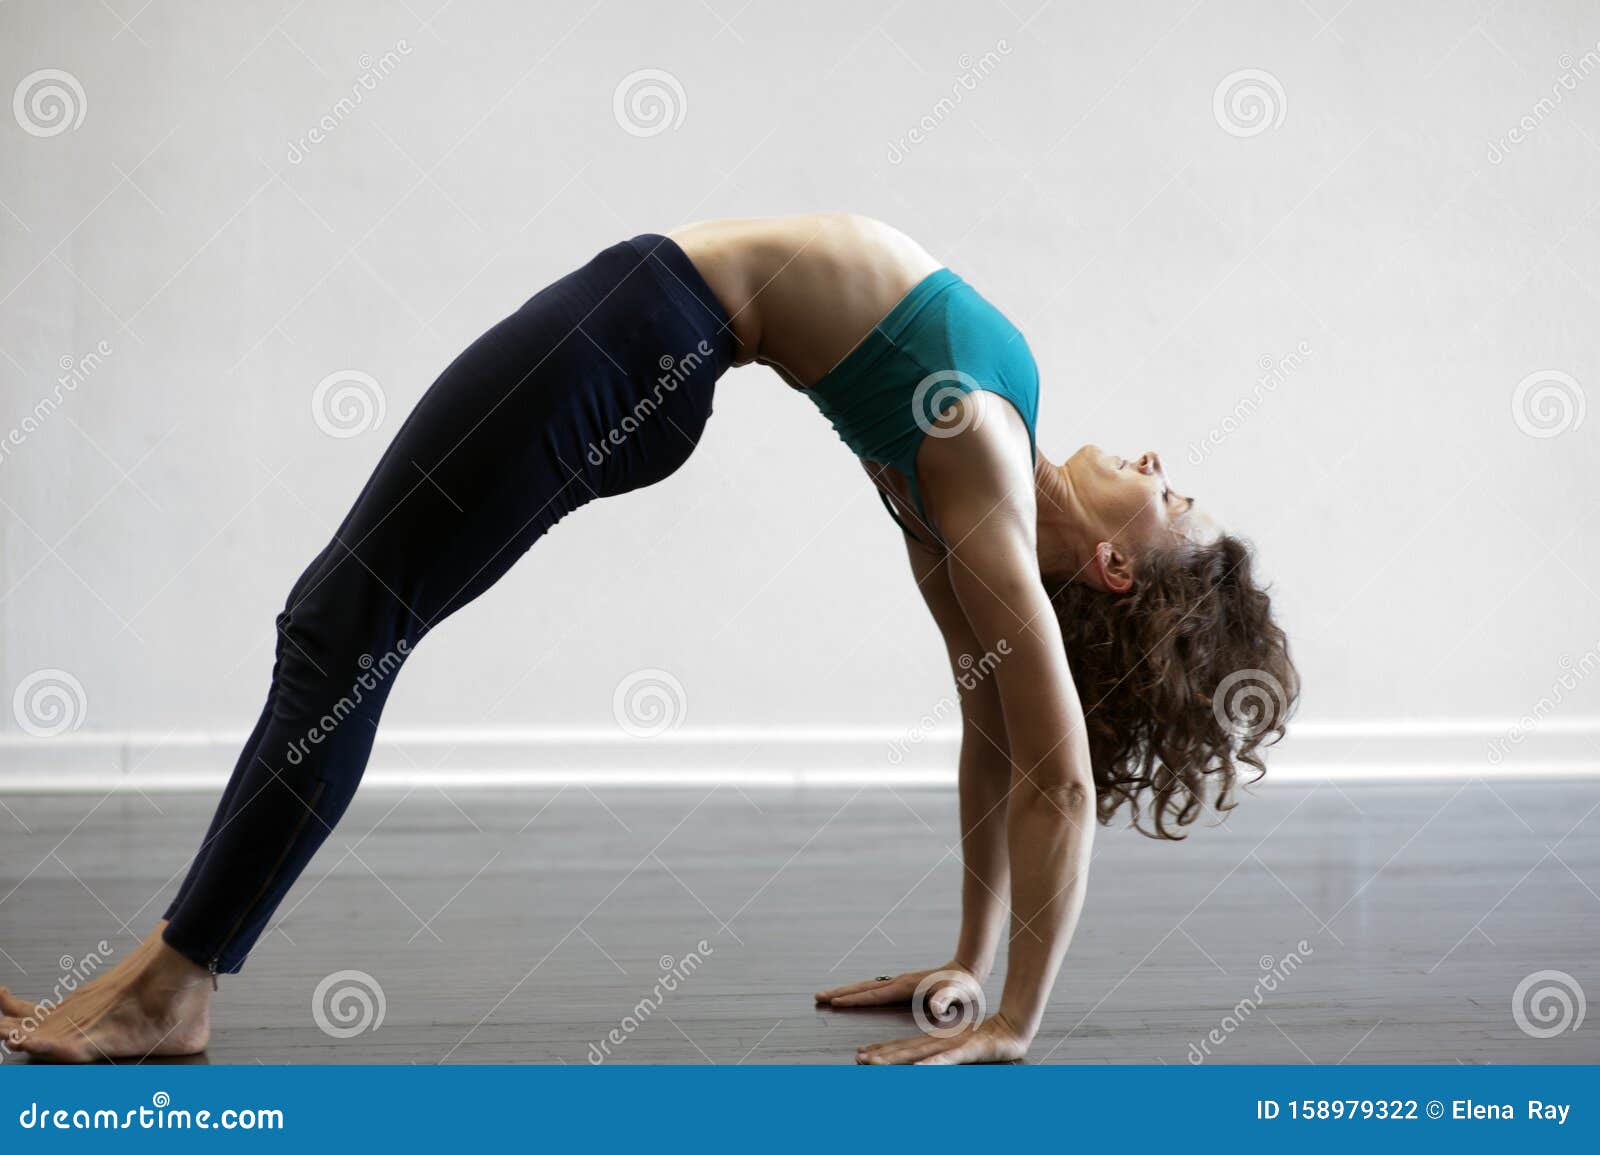 Extreme Yoga Poses Stock Photos - Free & Royalty-Free Stock Photos